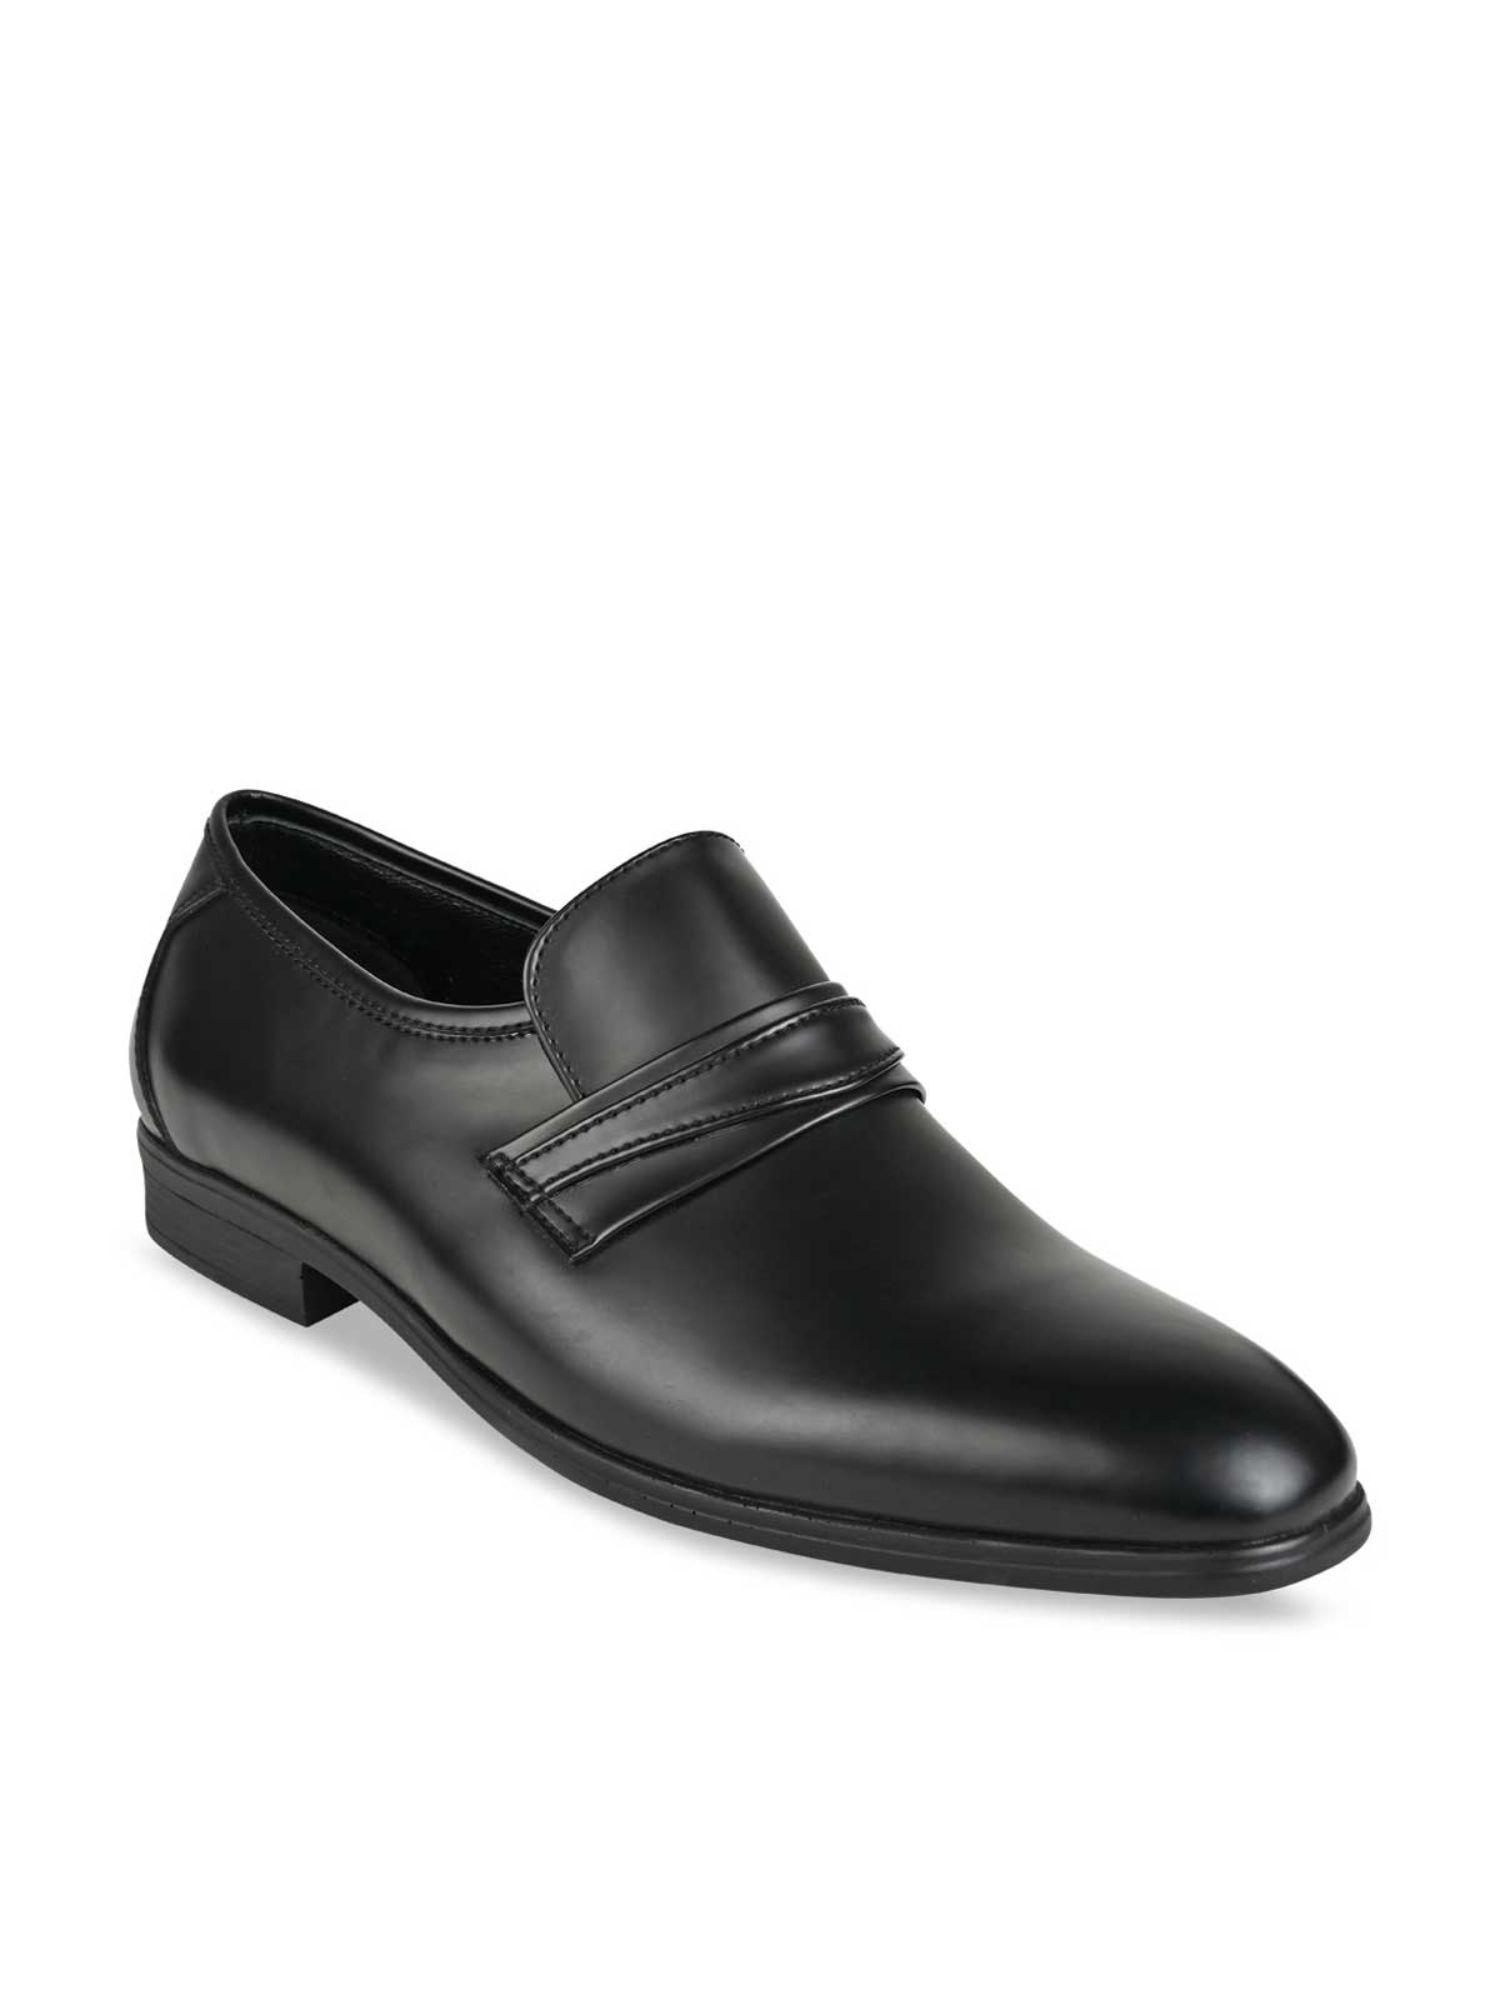 men-black-solid-leather-slip-on-shoes